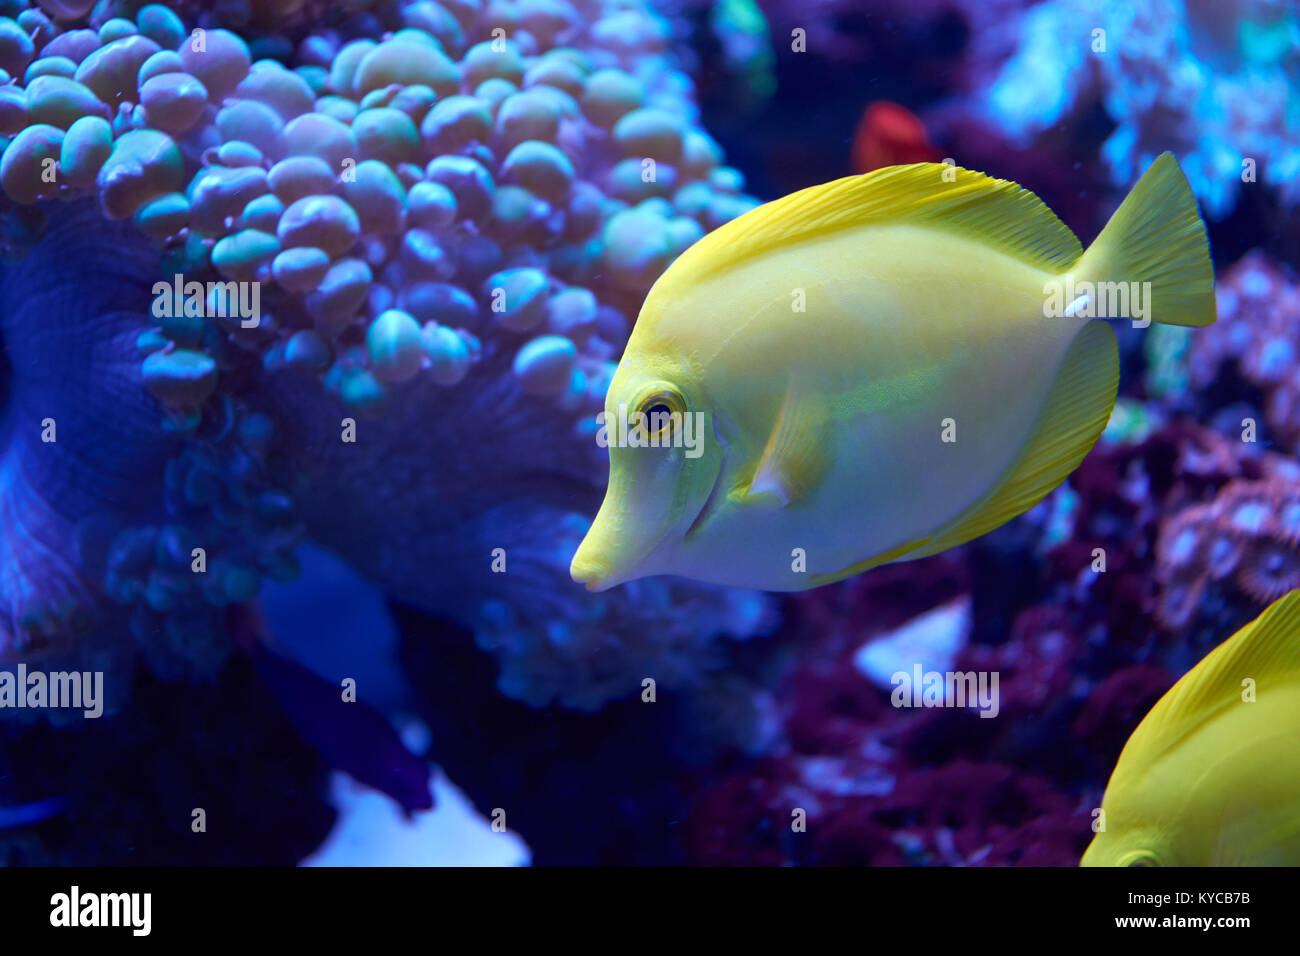 La linguetta gialla accanto a pesci coralli in acquario Foto Stock